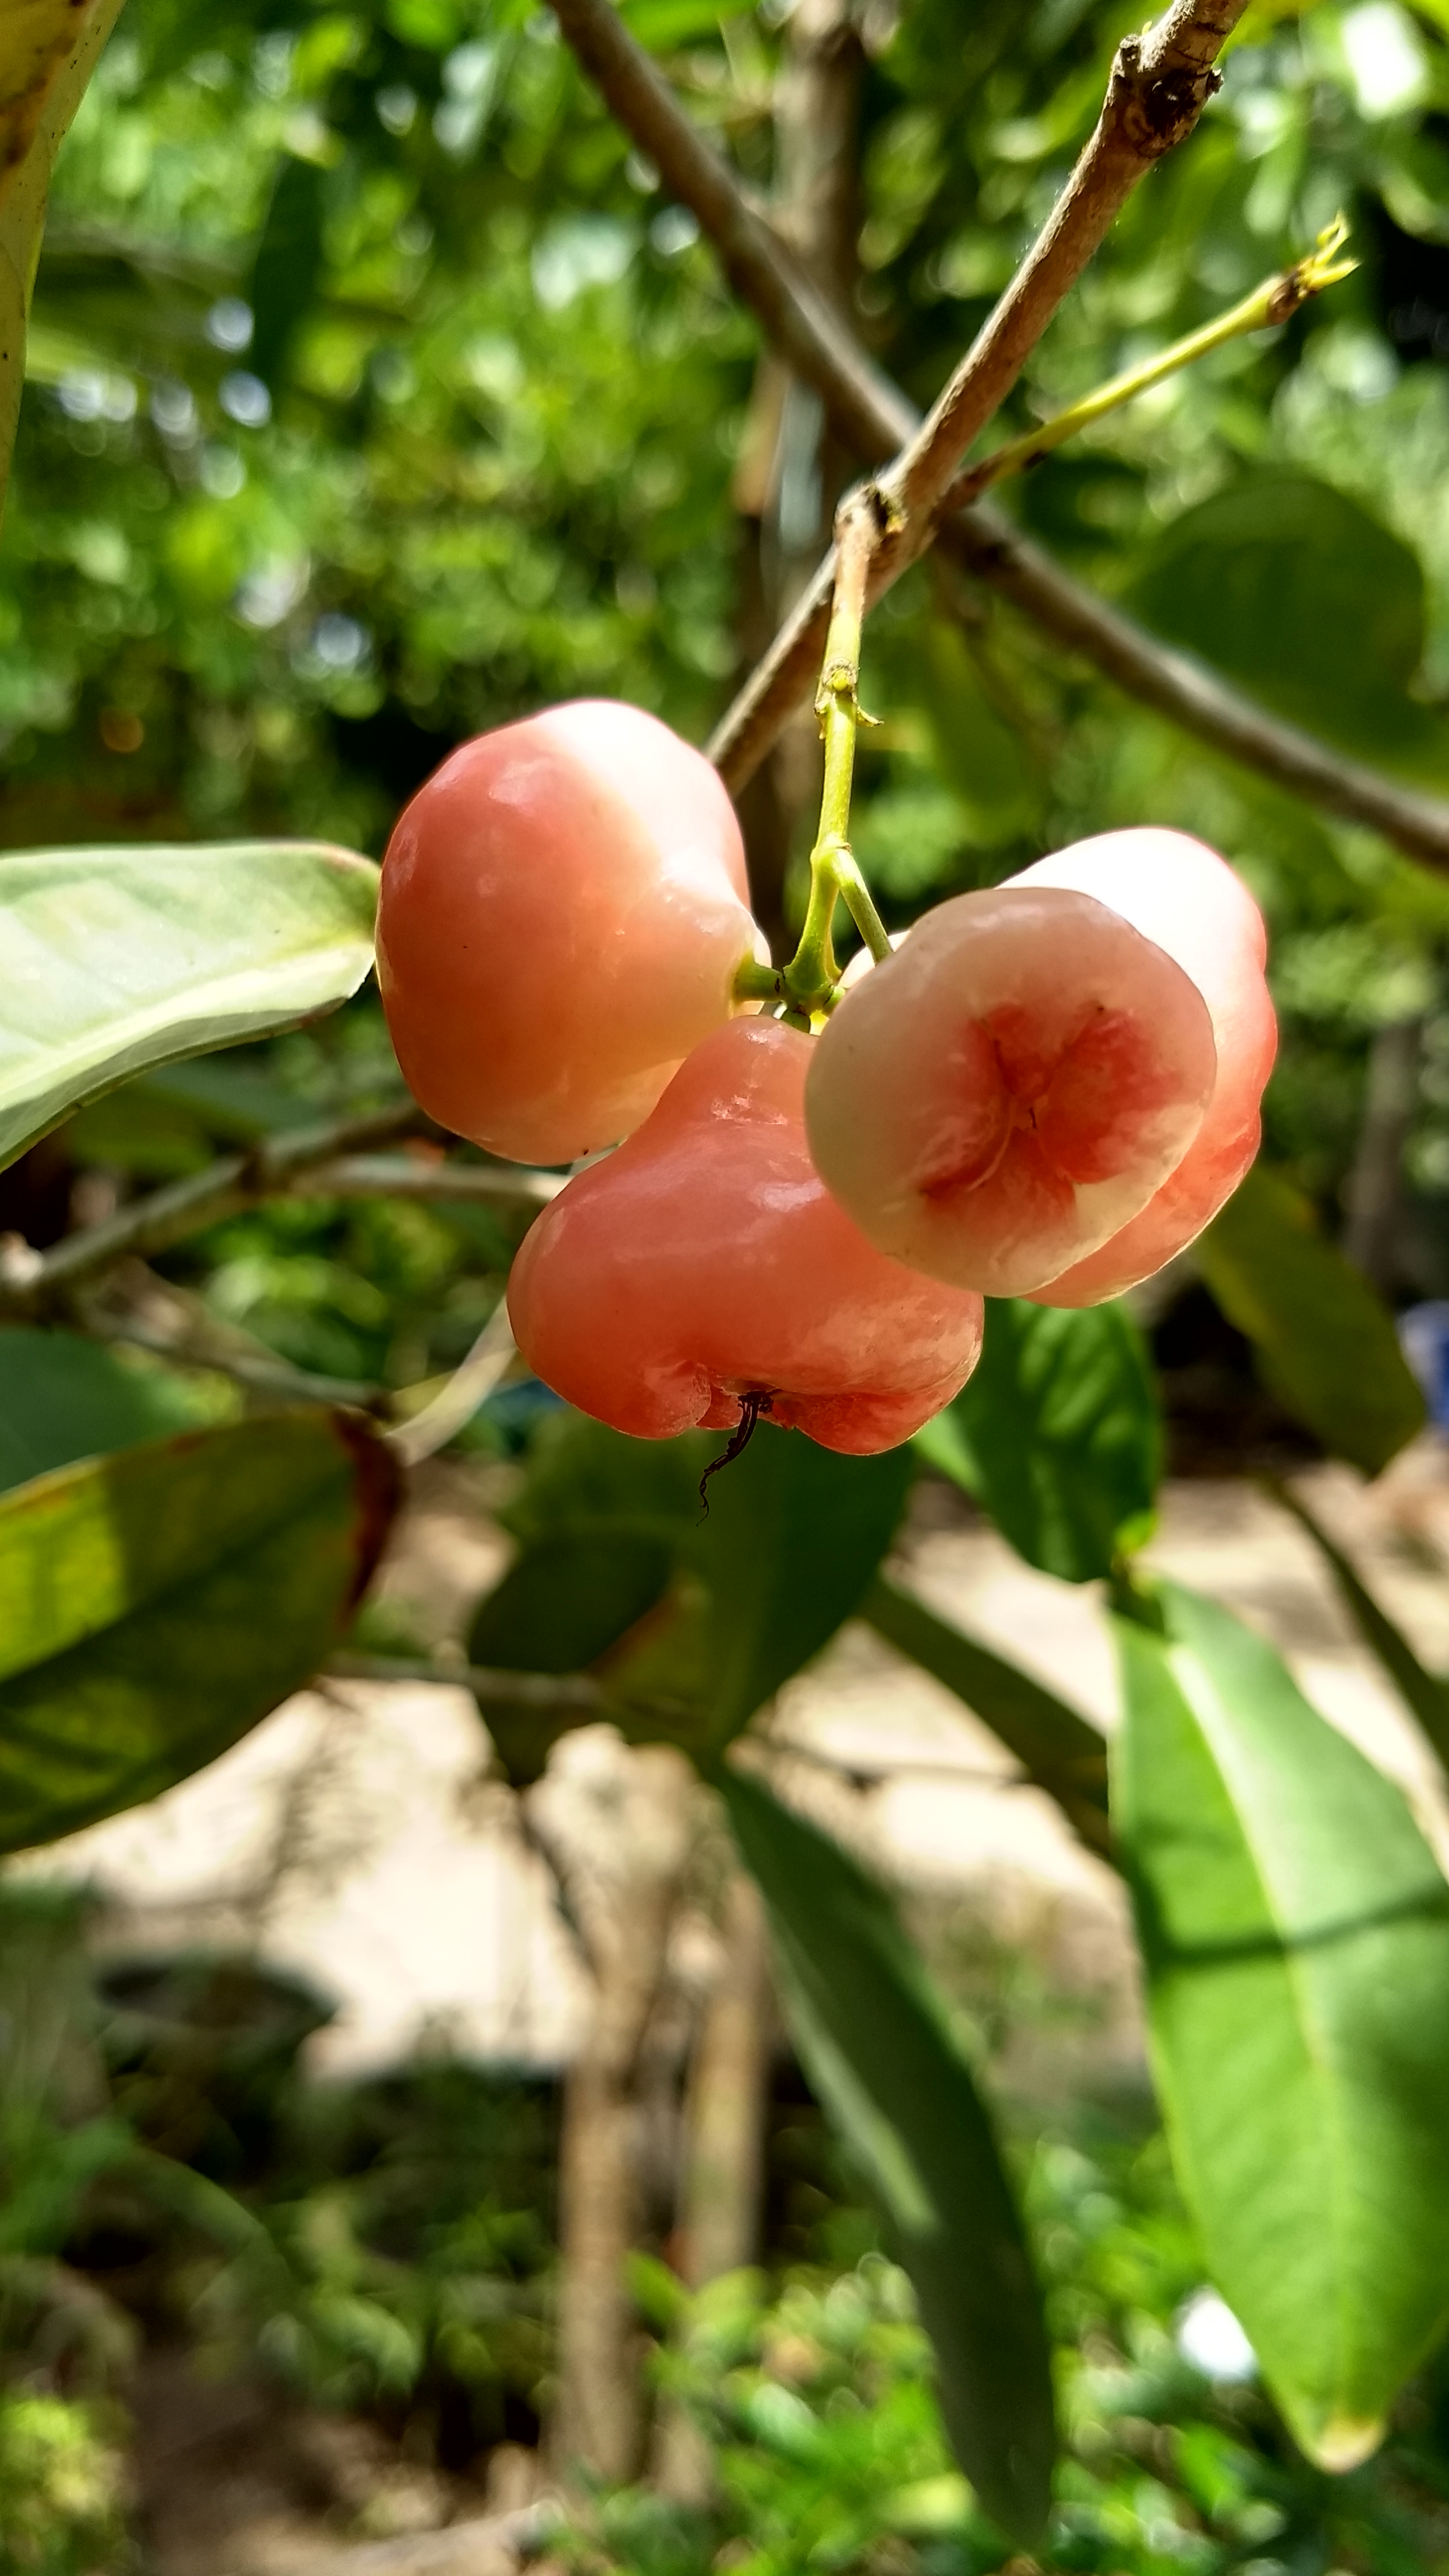 Fruit waxing - Wikipedia